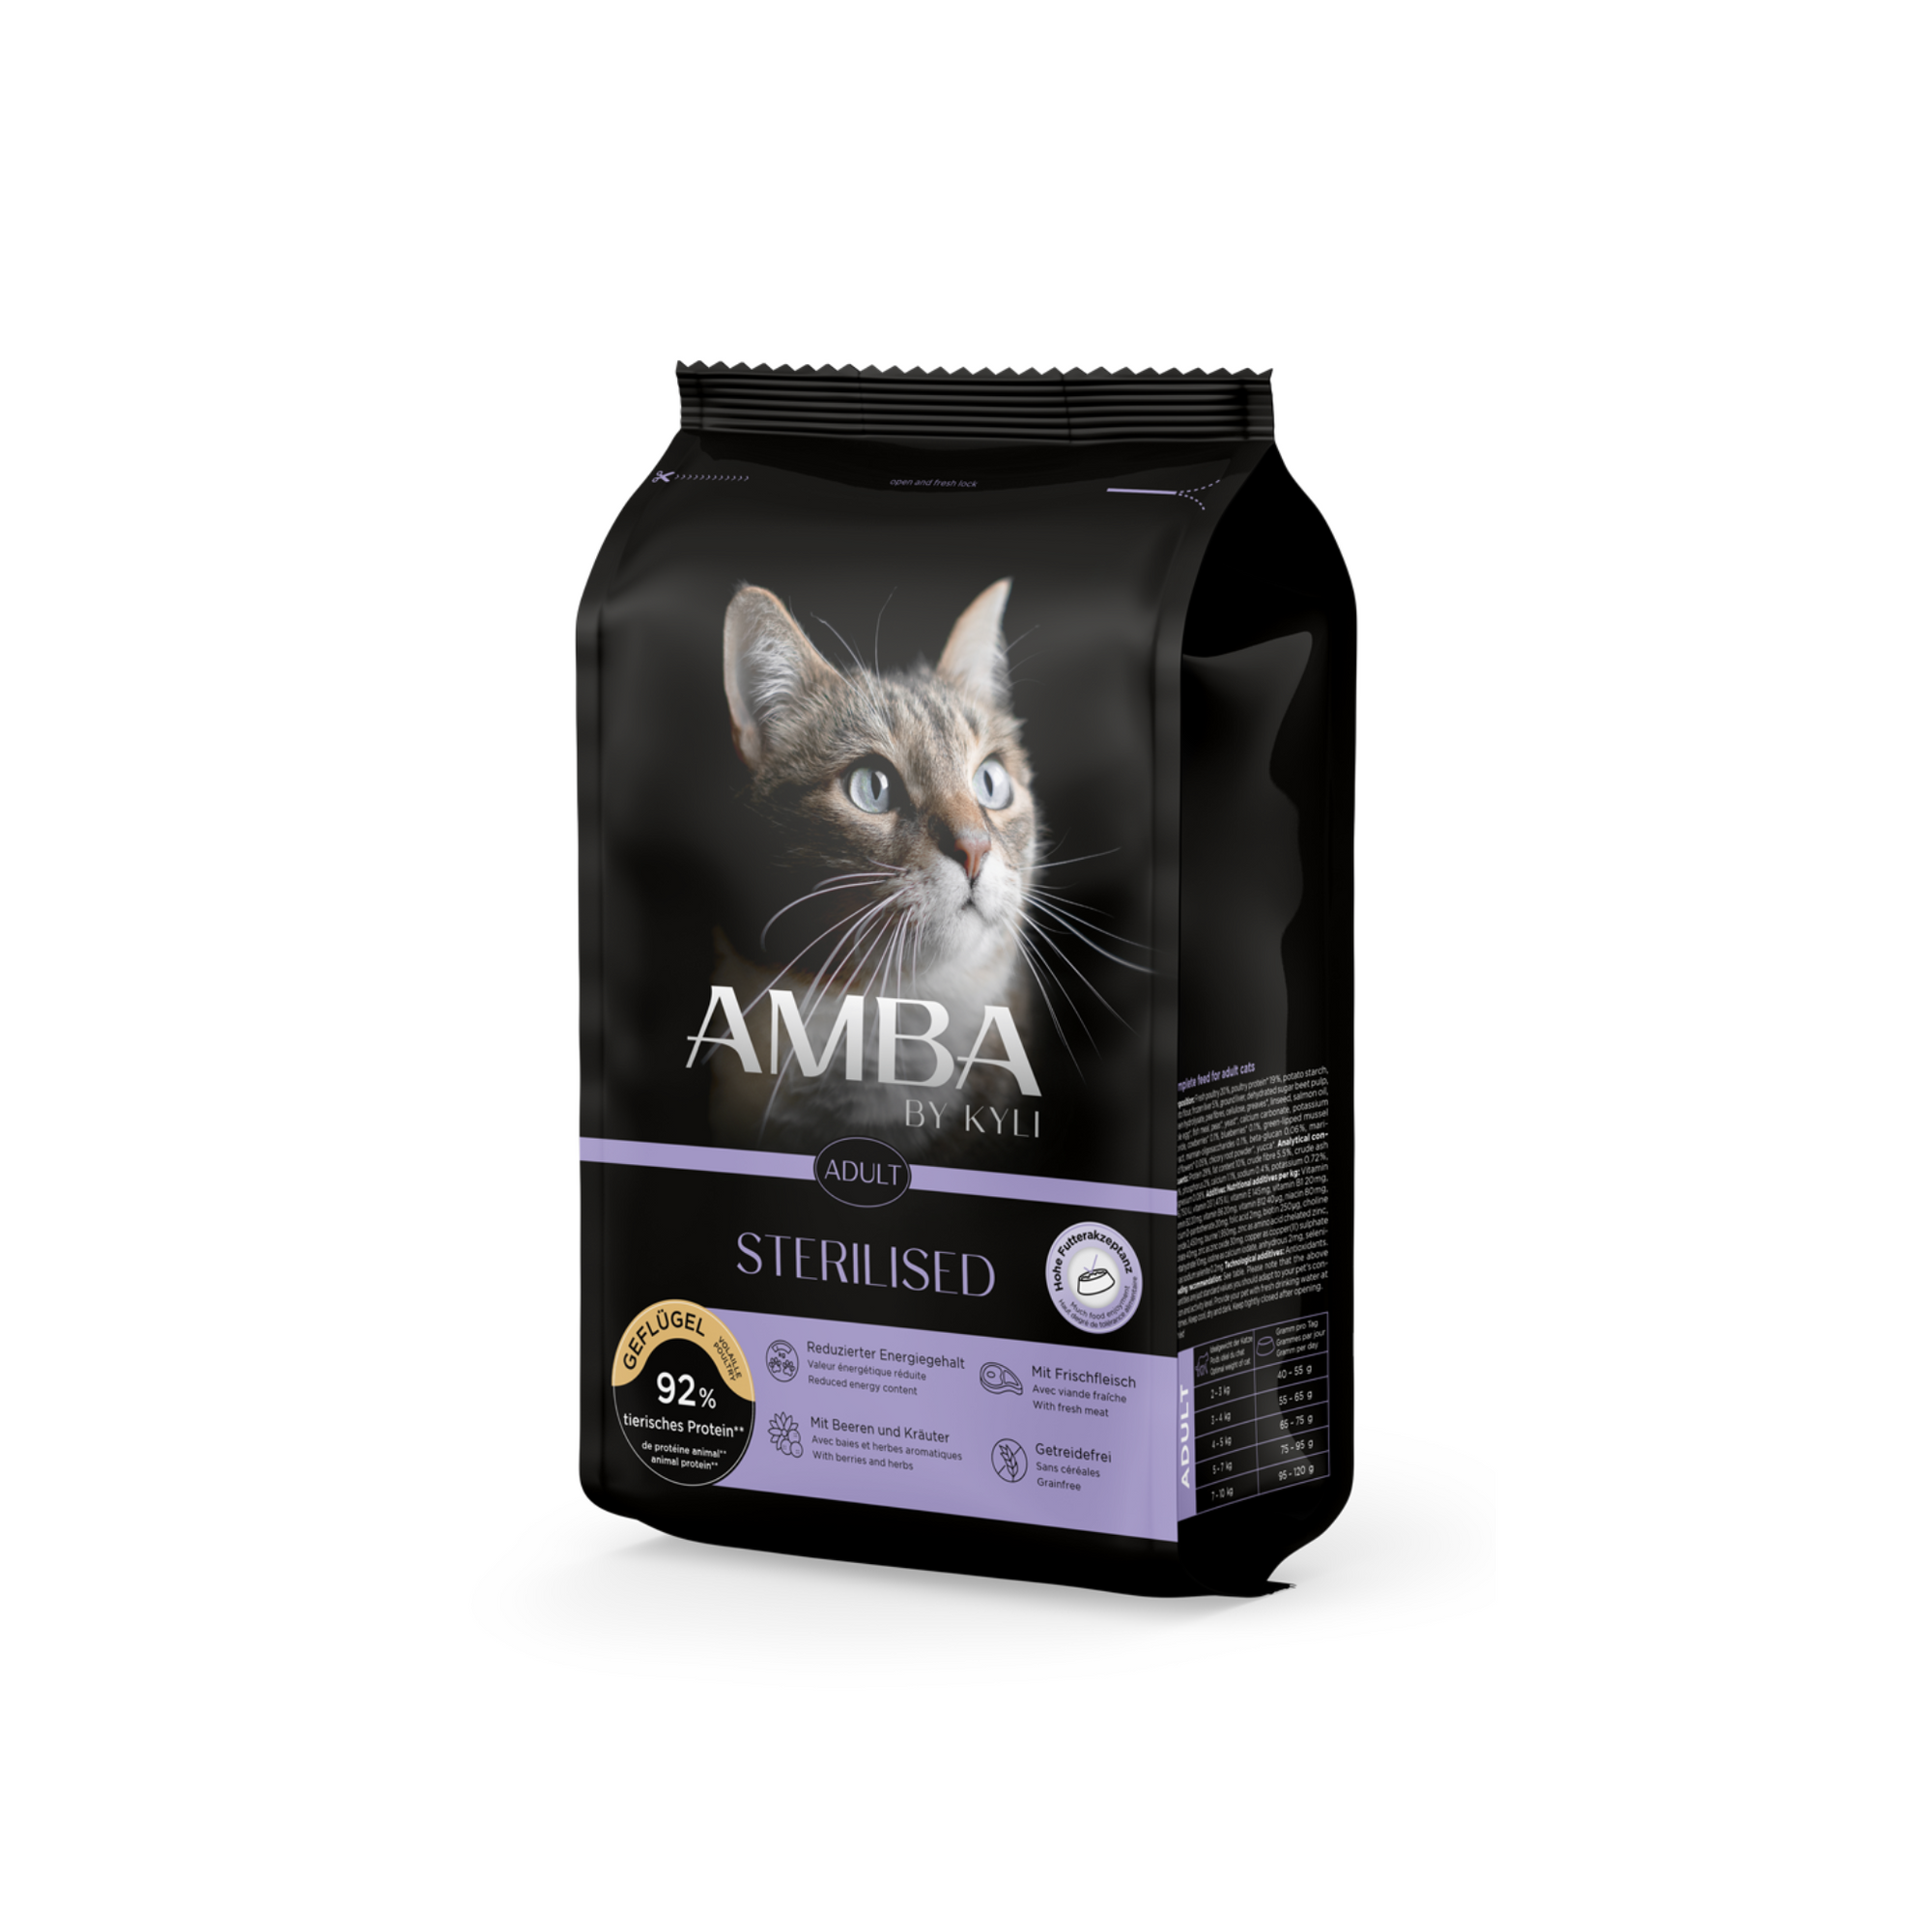 Artikel mit dem Namen AMBA by kyli Sterilised im Shop von zoo.de , dem Onlineshop für nachhaltiges Hundefutter und Katzenfutter.